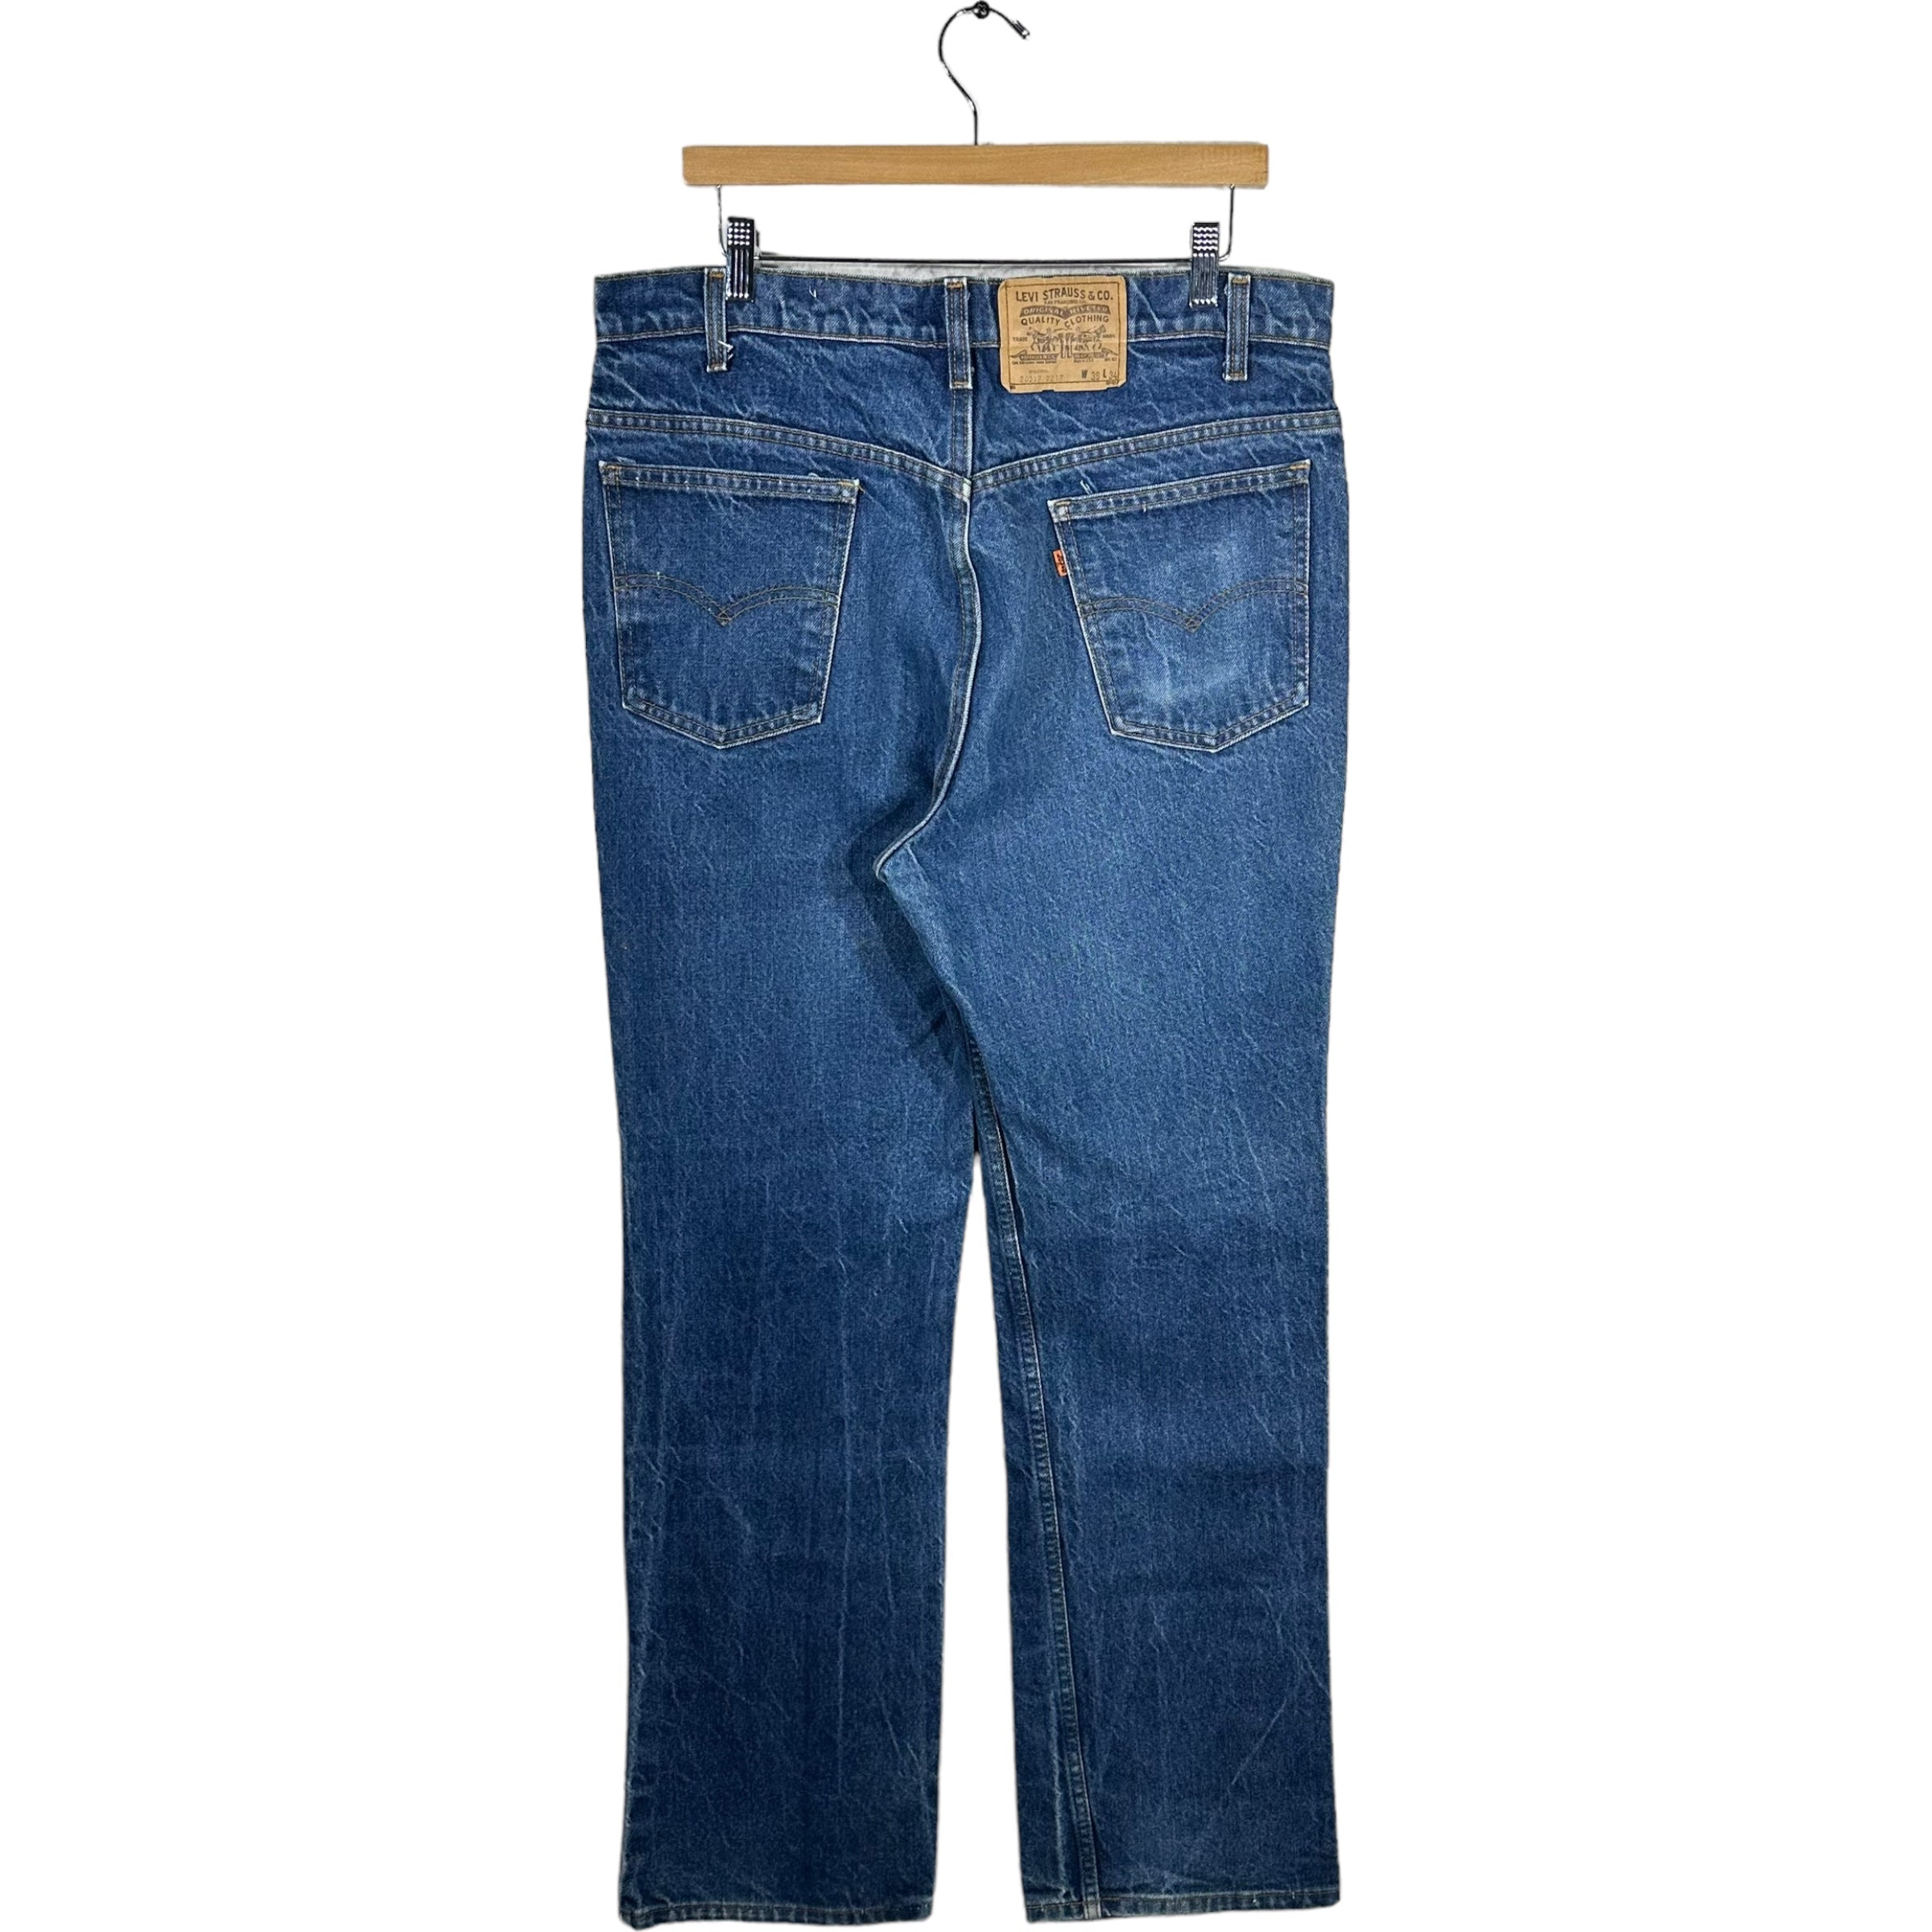 Vintage Levi's Orange Tab Jeans 90s